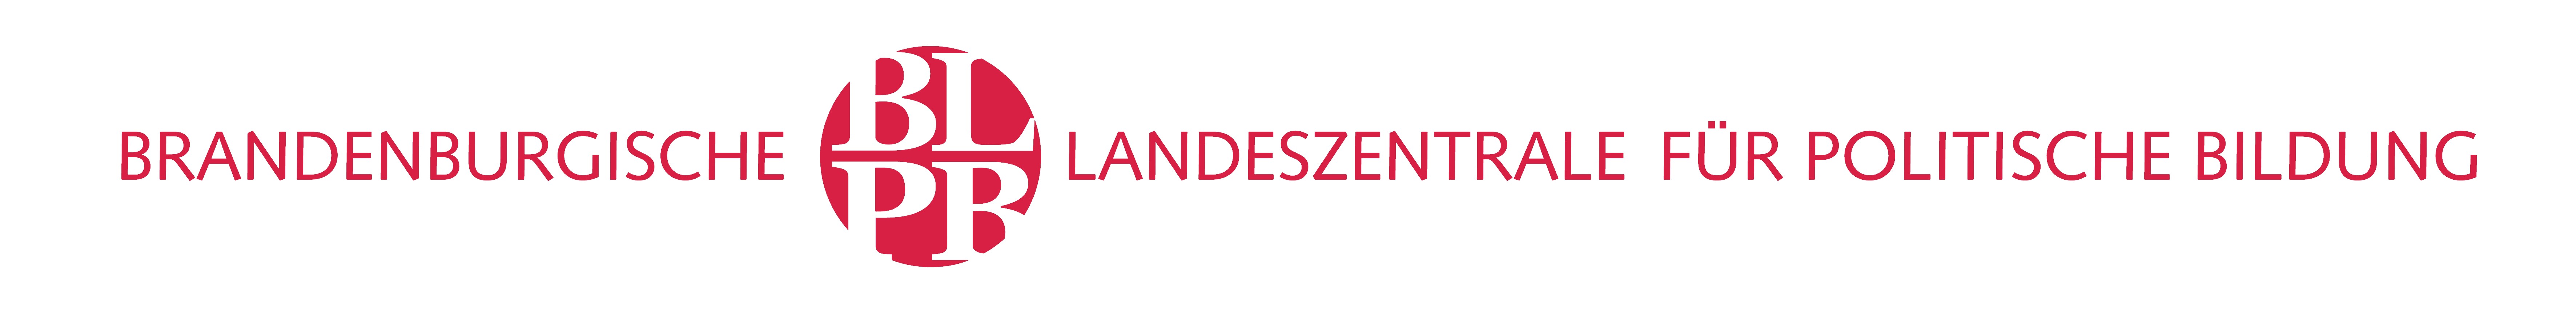 Logo der Brandenburgischen Landeszentrale für politische Bildung